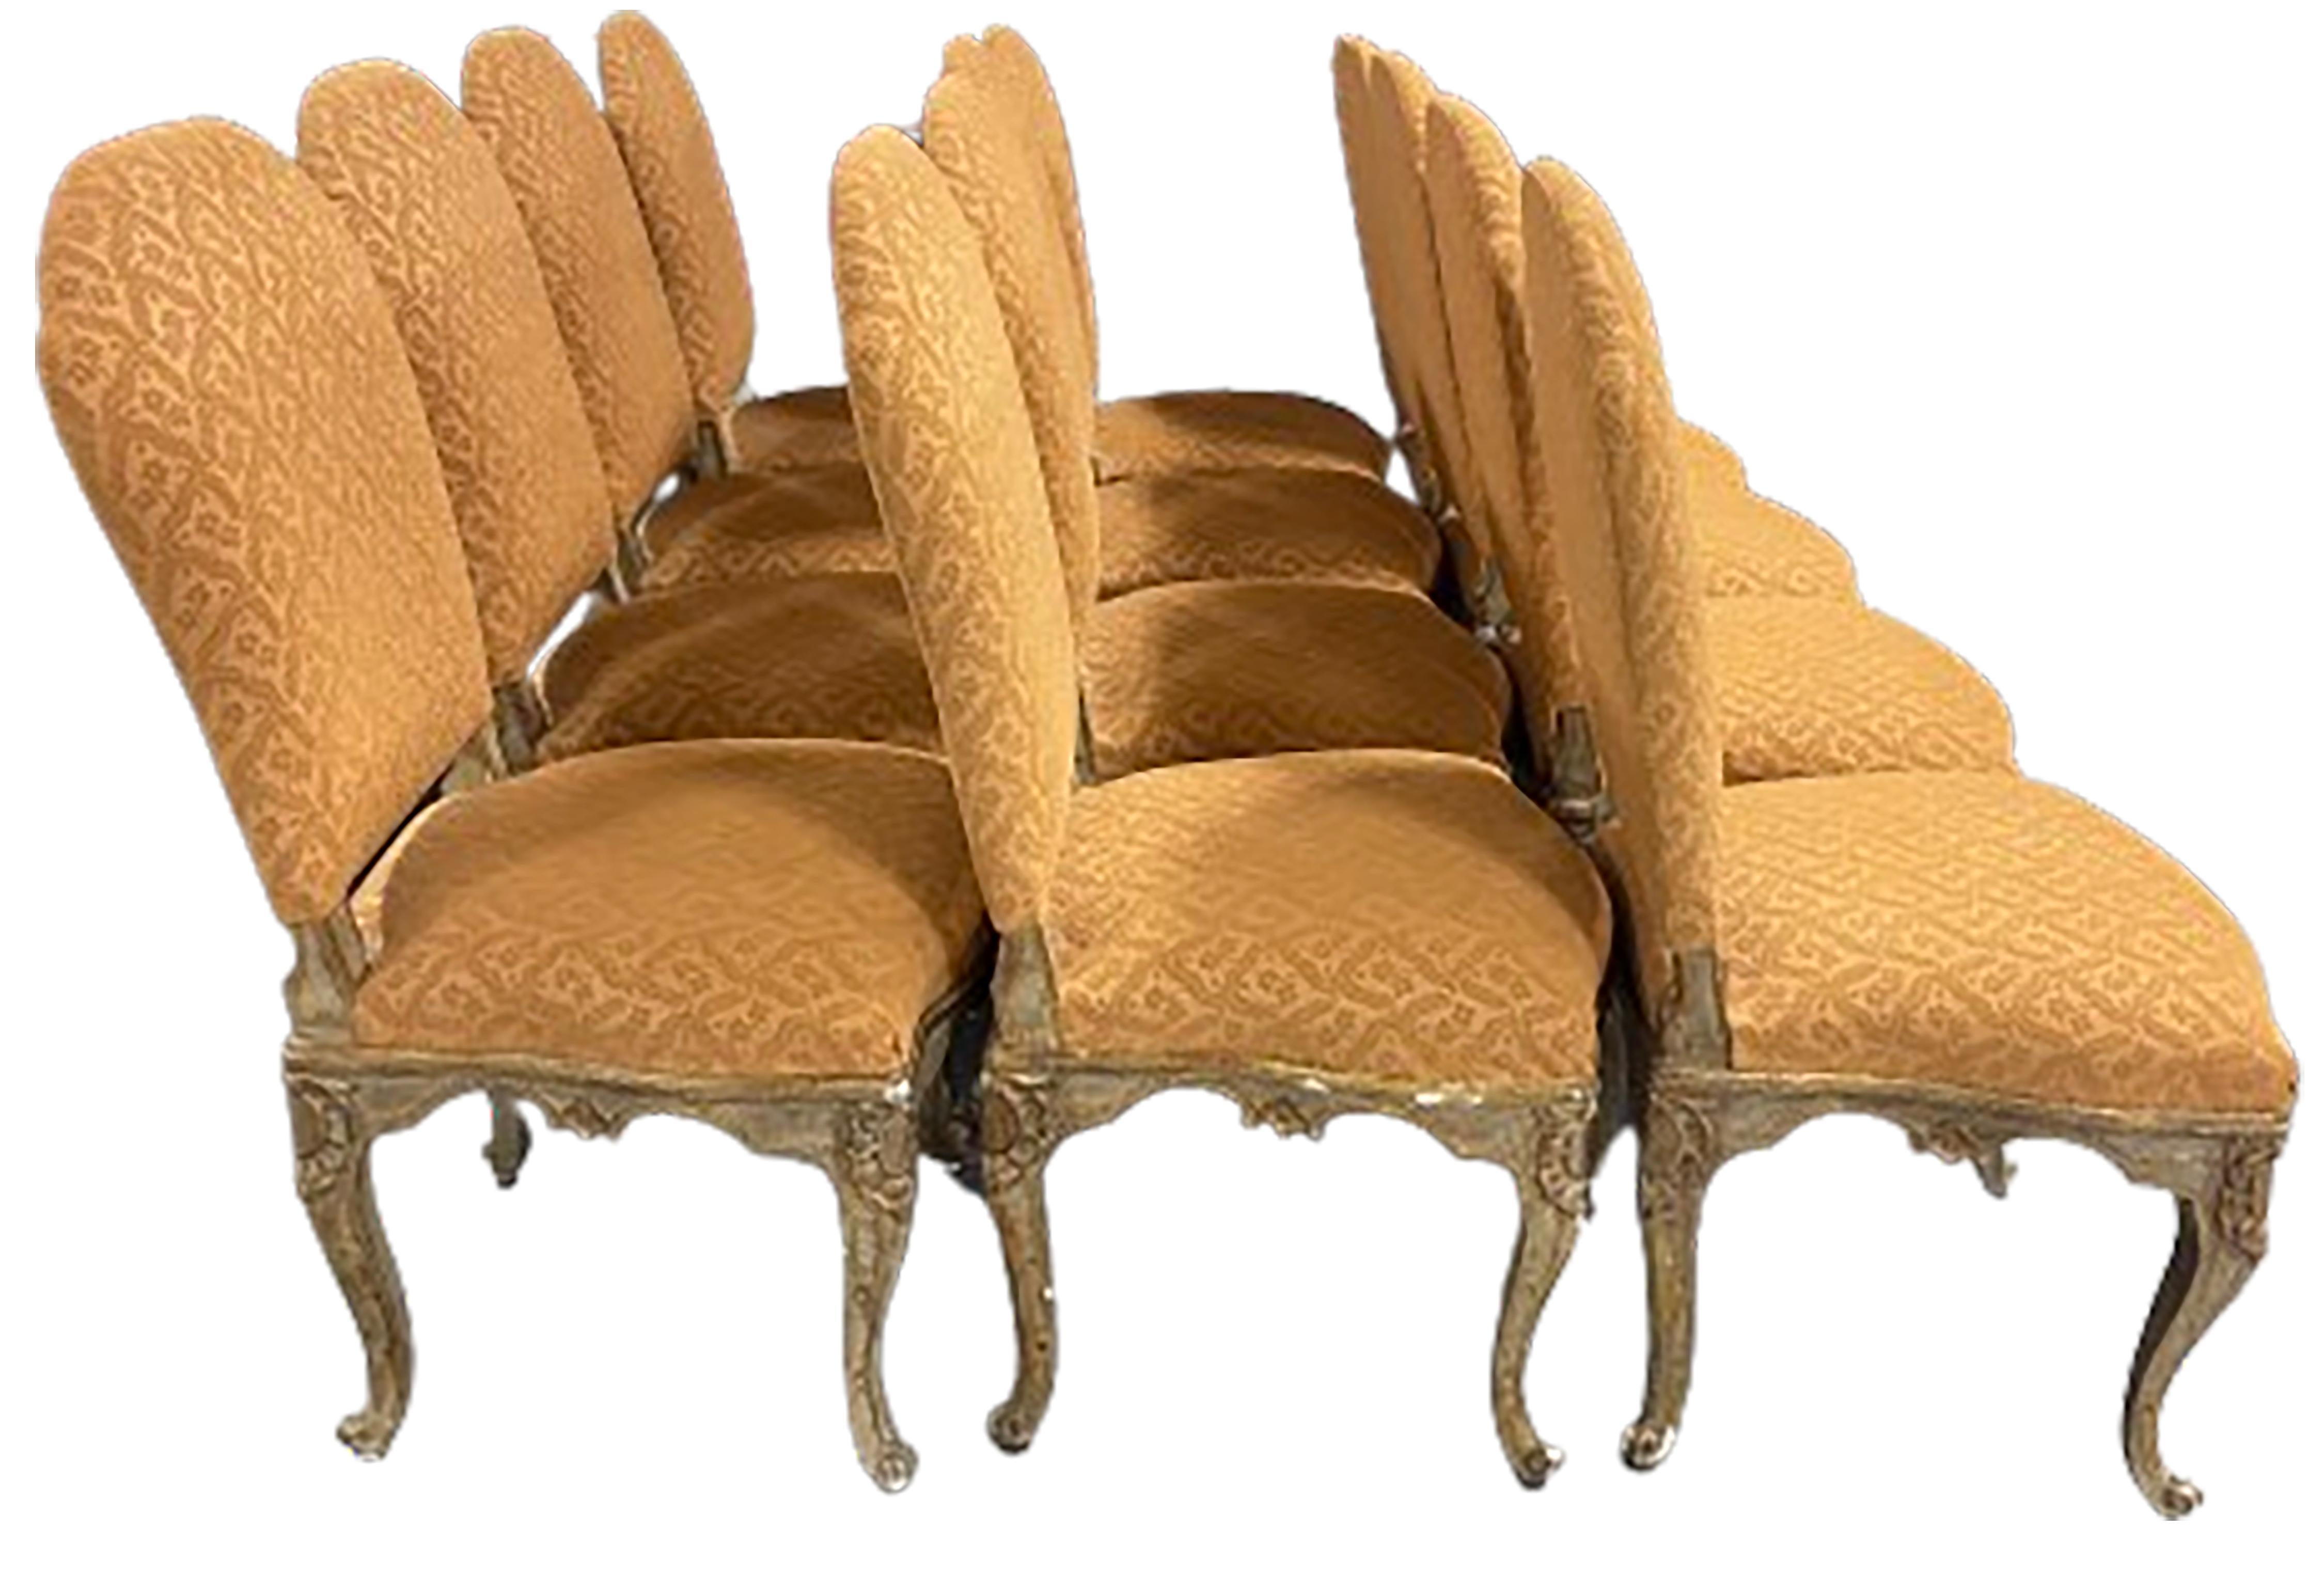 Un élégant ensemble de douze chaises de salle à manger de style Louis XV. Tissu d'ameublement couleur or moutarde et pieds en bois cabriole. Des dossiers légèrement inclinés et un  base dorée foncée. 

En bon état. Usure conforme à l'âge et à